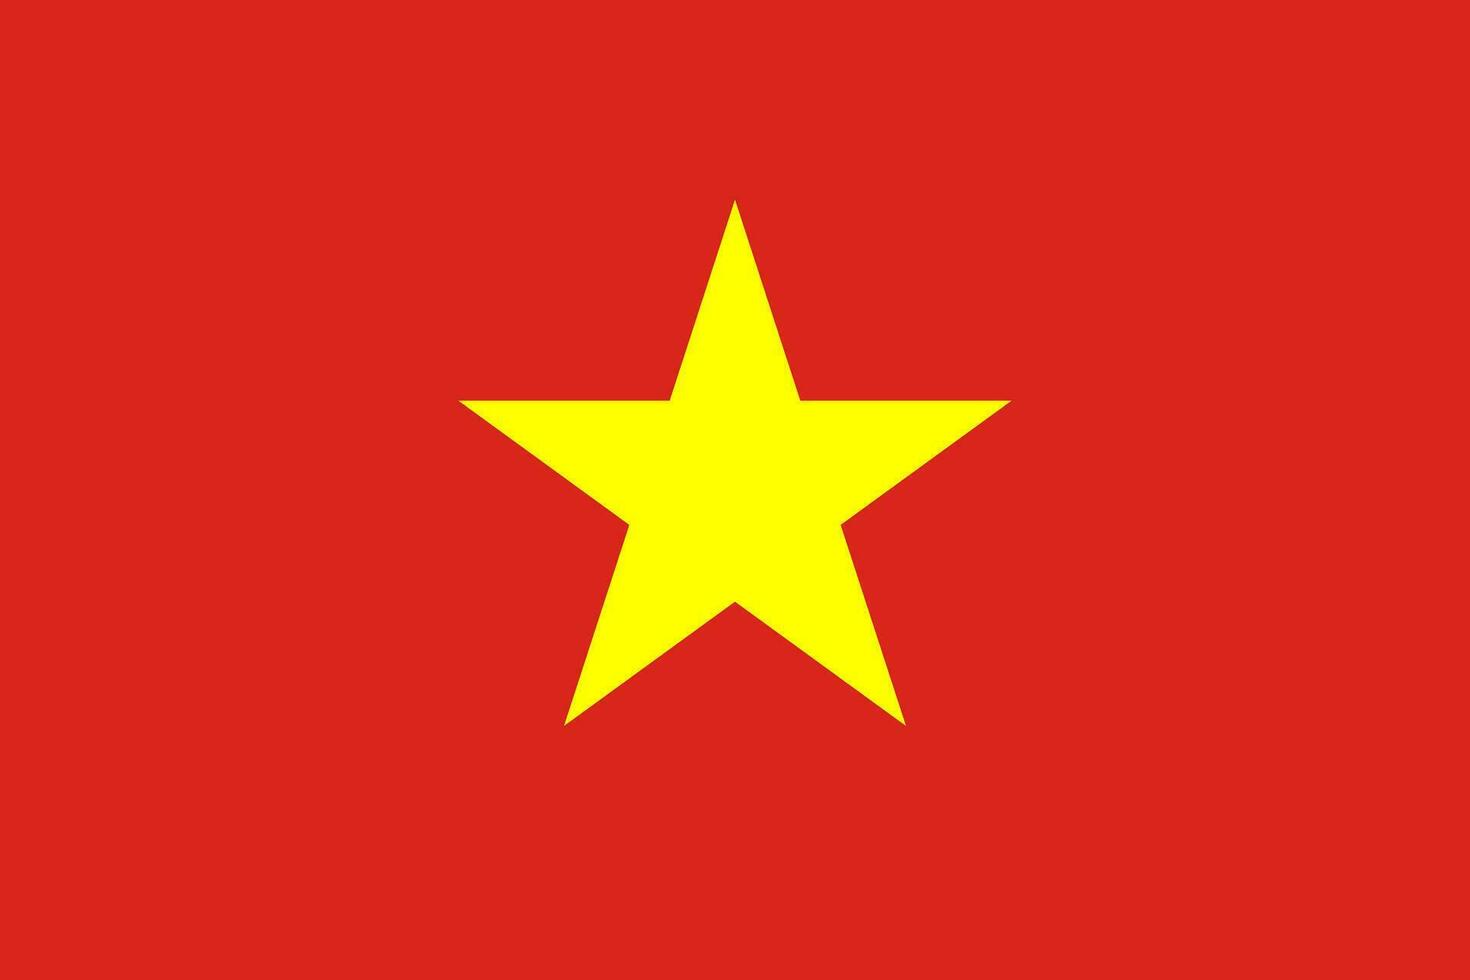 vietnams flagga, officiella färger och proportioner. vektor illustration.